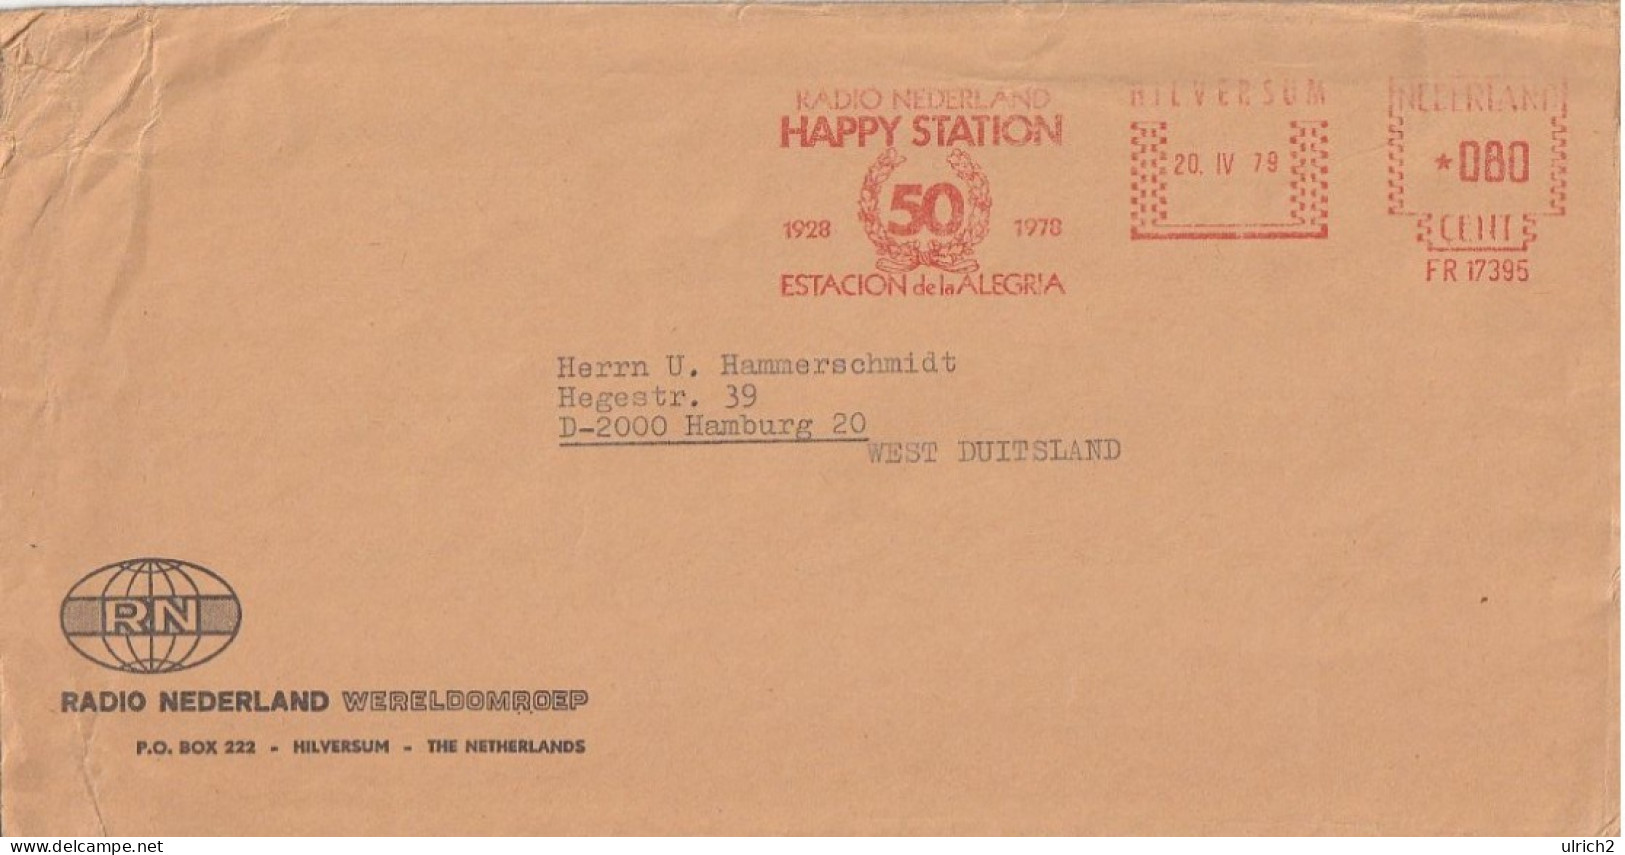 Netherlands - Radio Nederland Happy Station 50 Years - 1979 (67147) - Briefe U. Dokumente